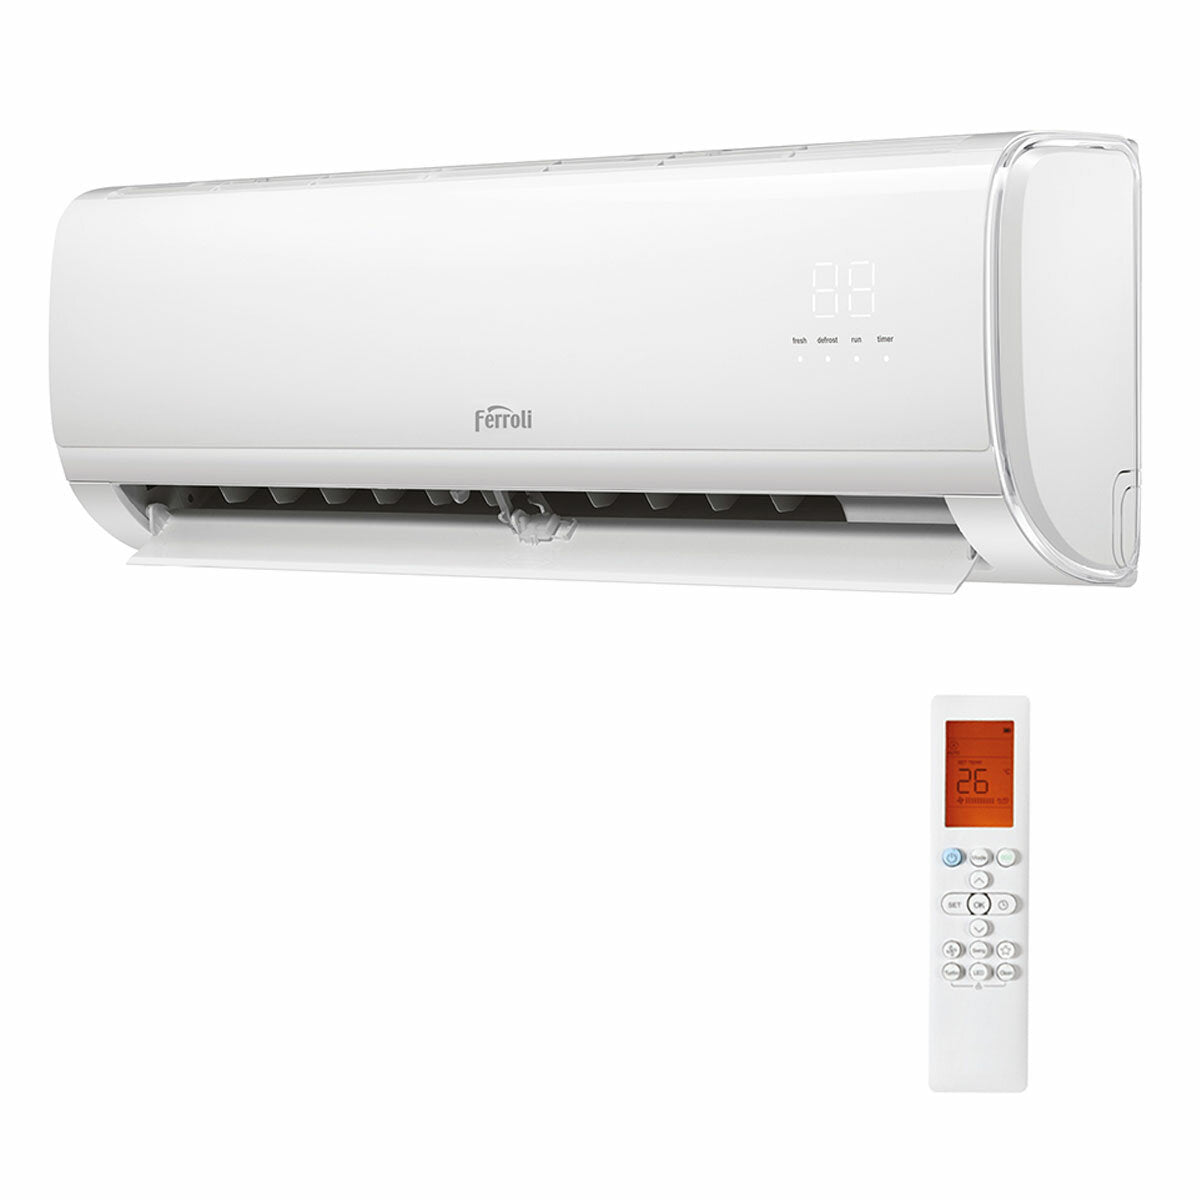 Ferroli Giada trial split air conditioner 9000+9000+12000 BTU inverter A+ wifi outdoor unit 6.2 kW